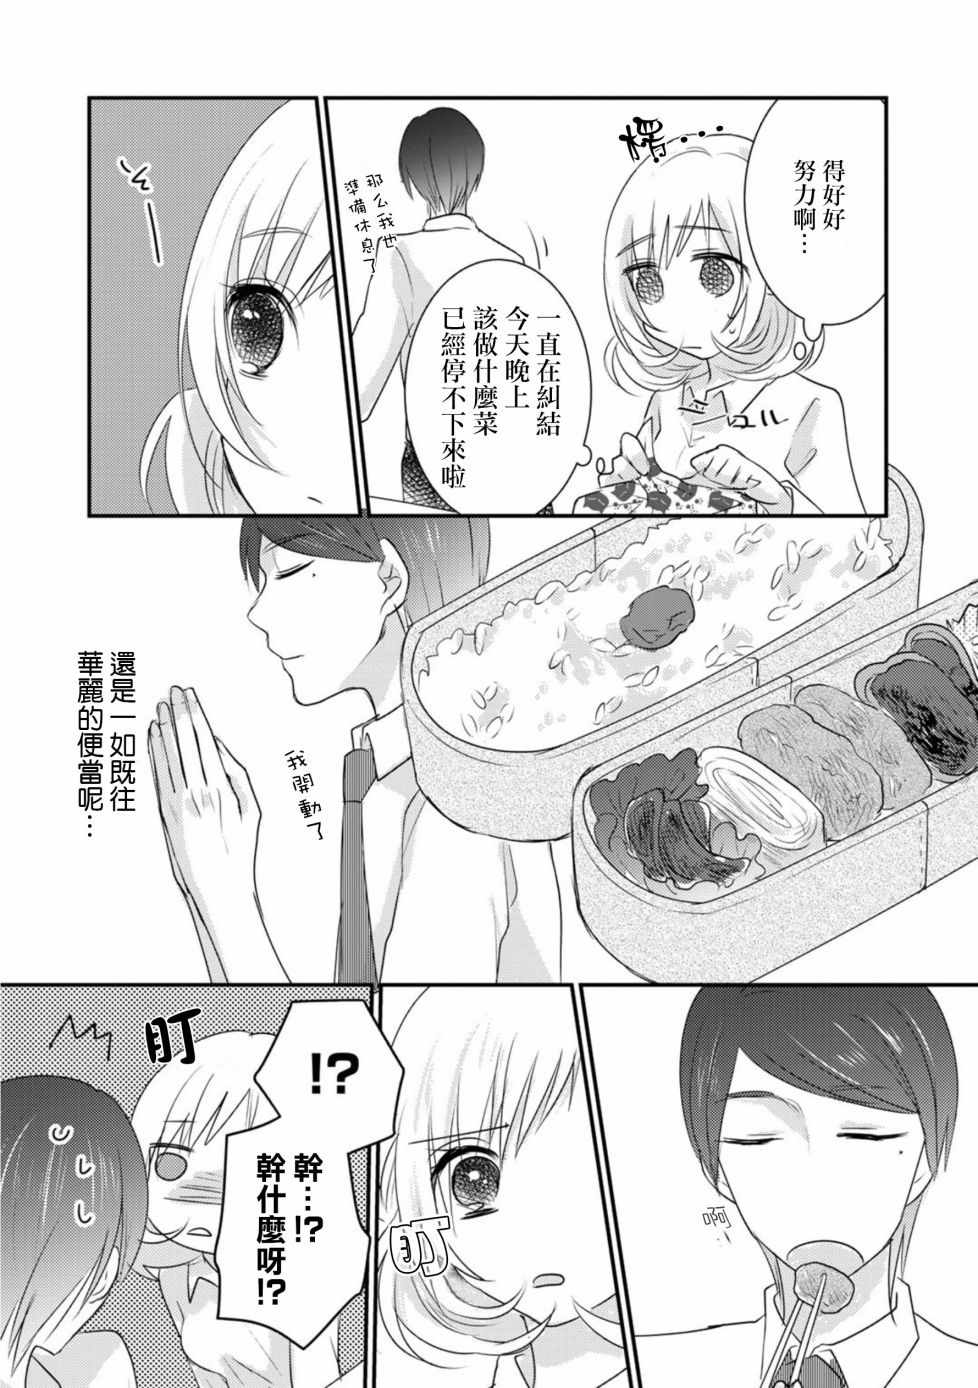 料理做過頭的少女與完食系男子少女與完食系男子006話第10頁 comic漫畫